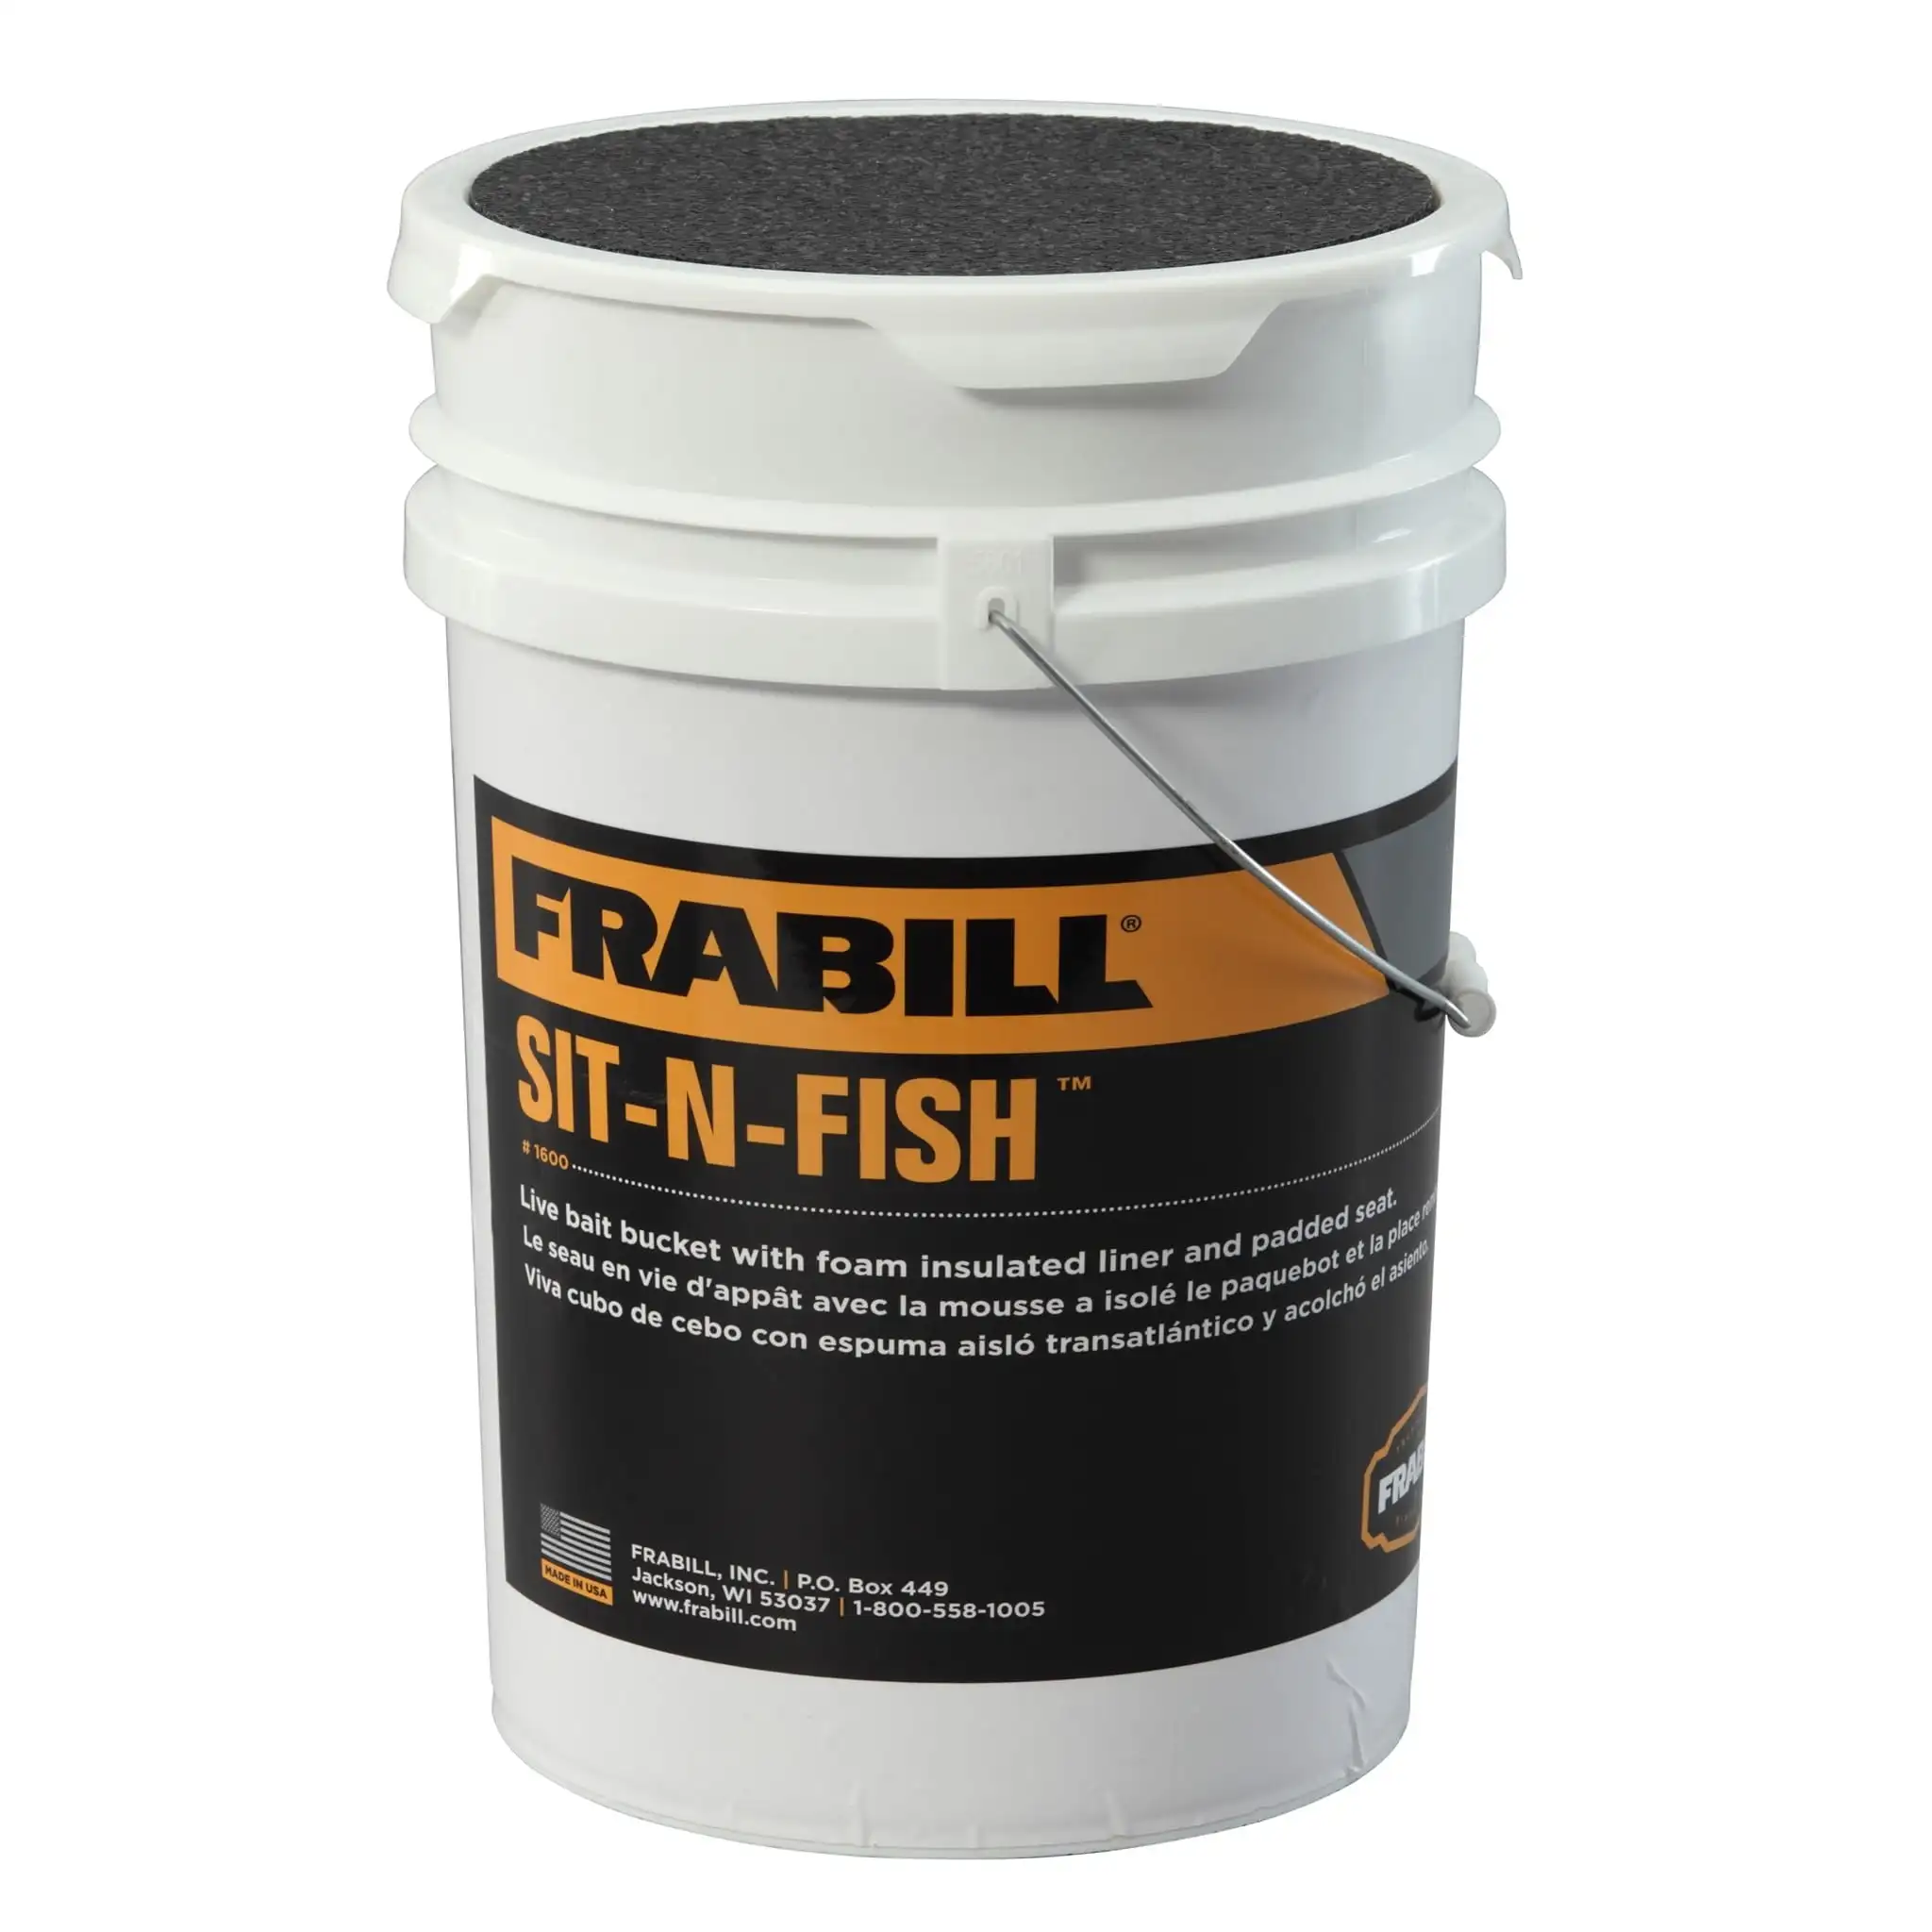 

Frabill Sit-N-Fish, 1600 изолированные коробки для рыболовных снастей и хранение приманки, 6 галлонов